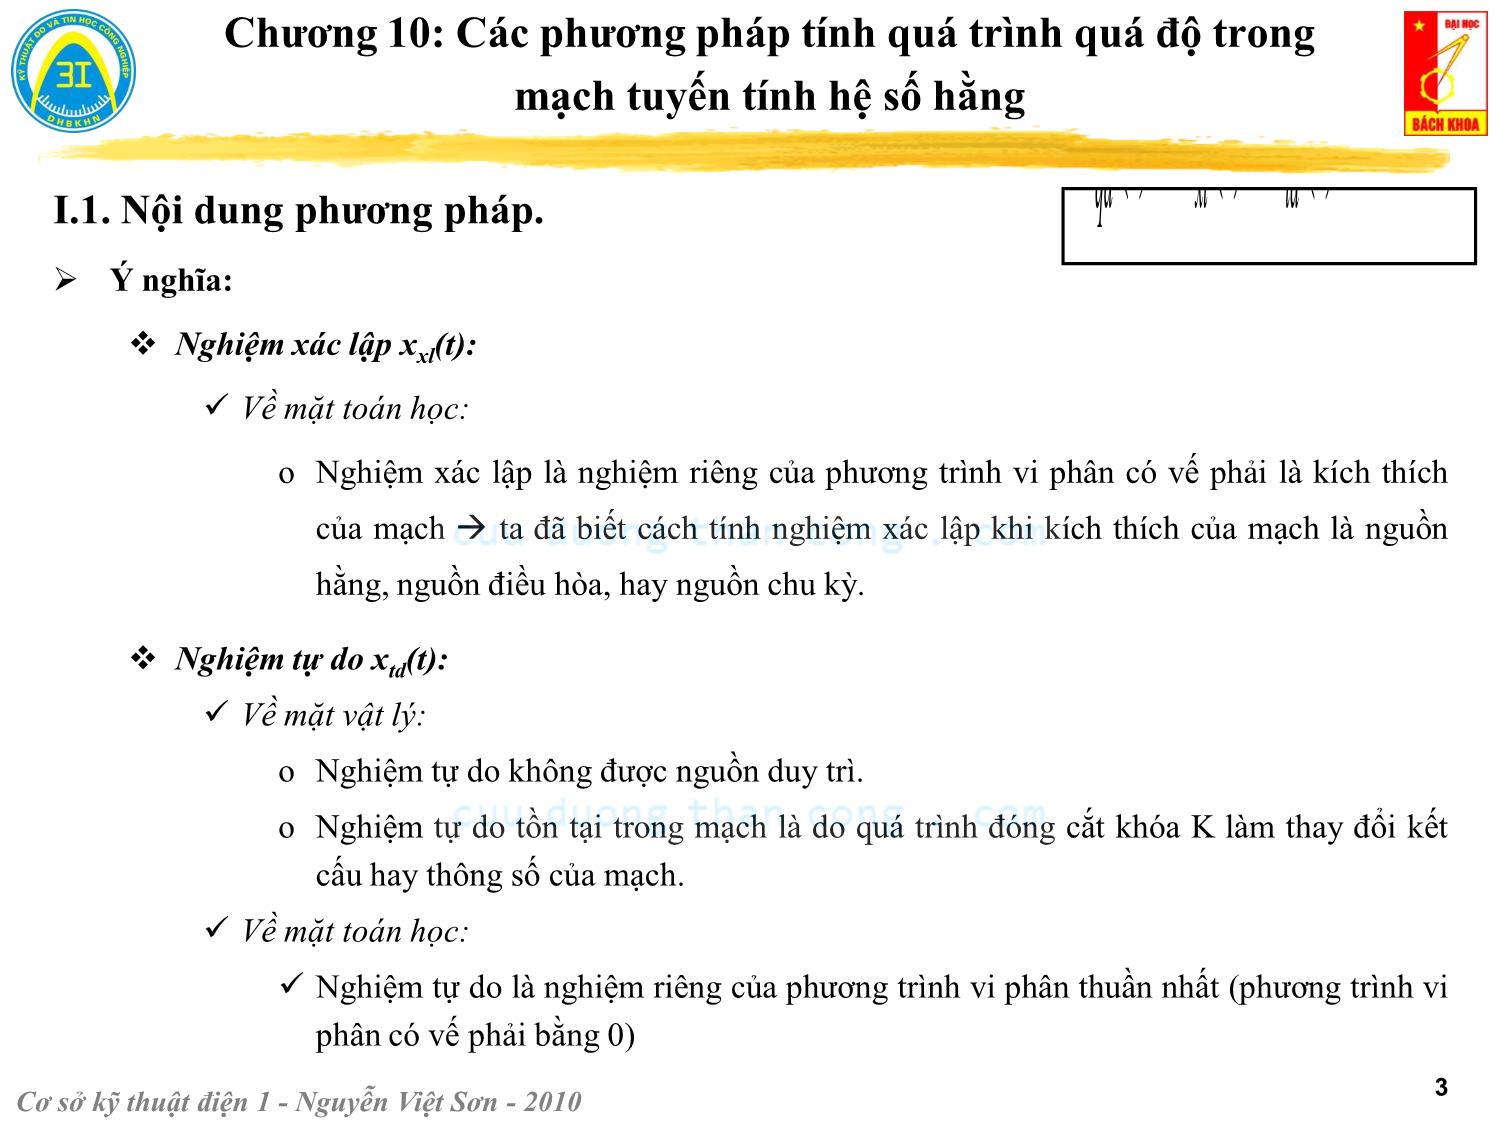 Bài giảng Kỹ thuật điện 1 - Chương 10: Các phương pháp tính quá trình quá độ trong mạch điện tuyến tính - Nguyễn Việt Sơn trang 3